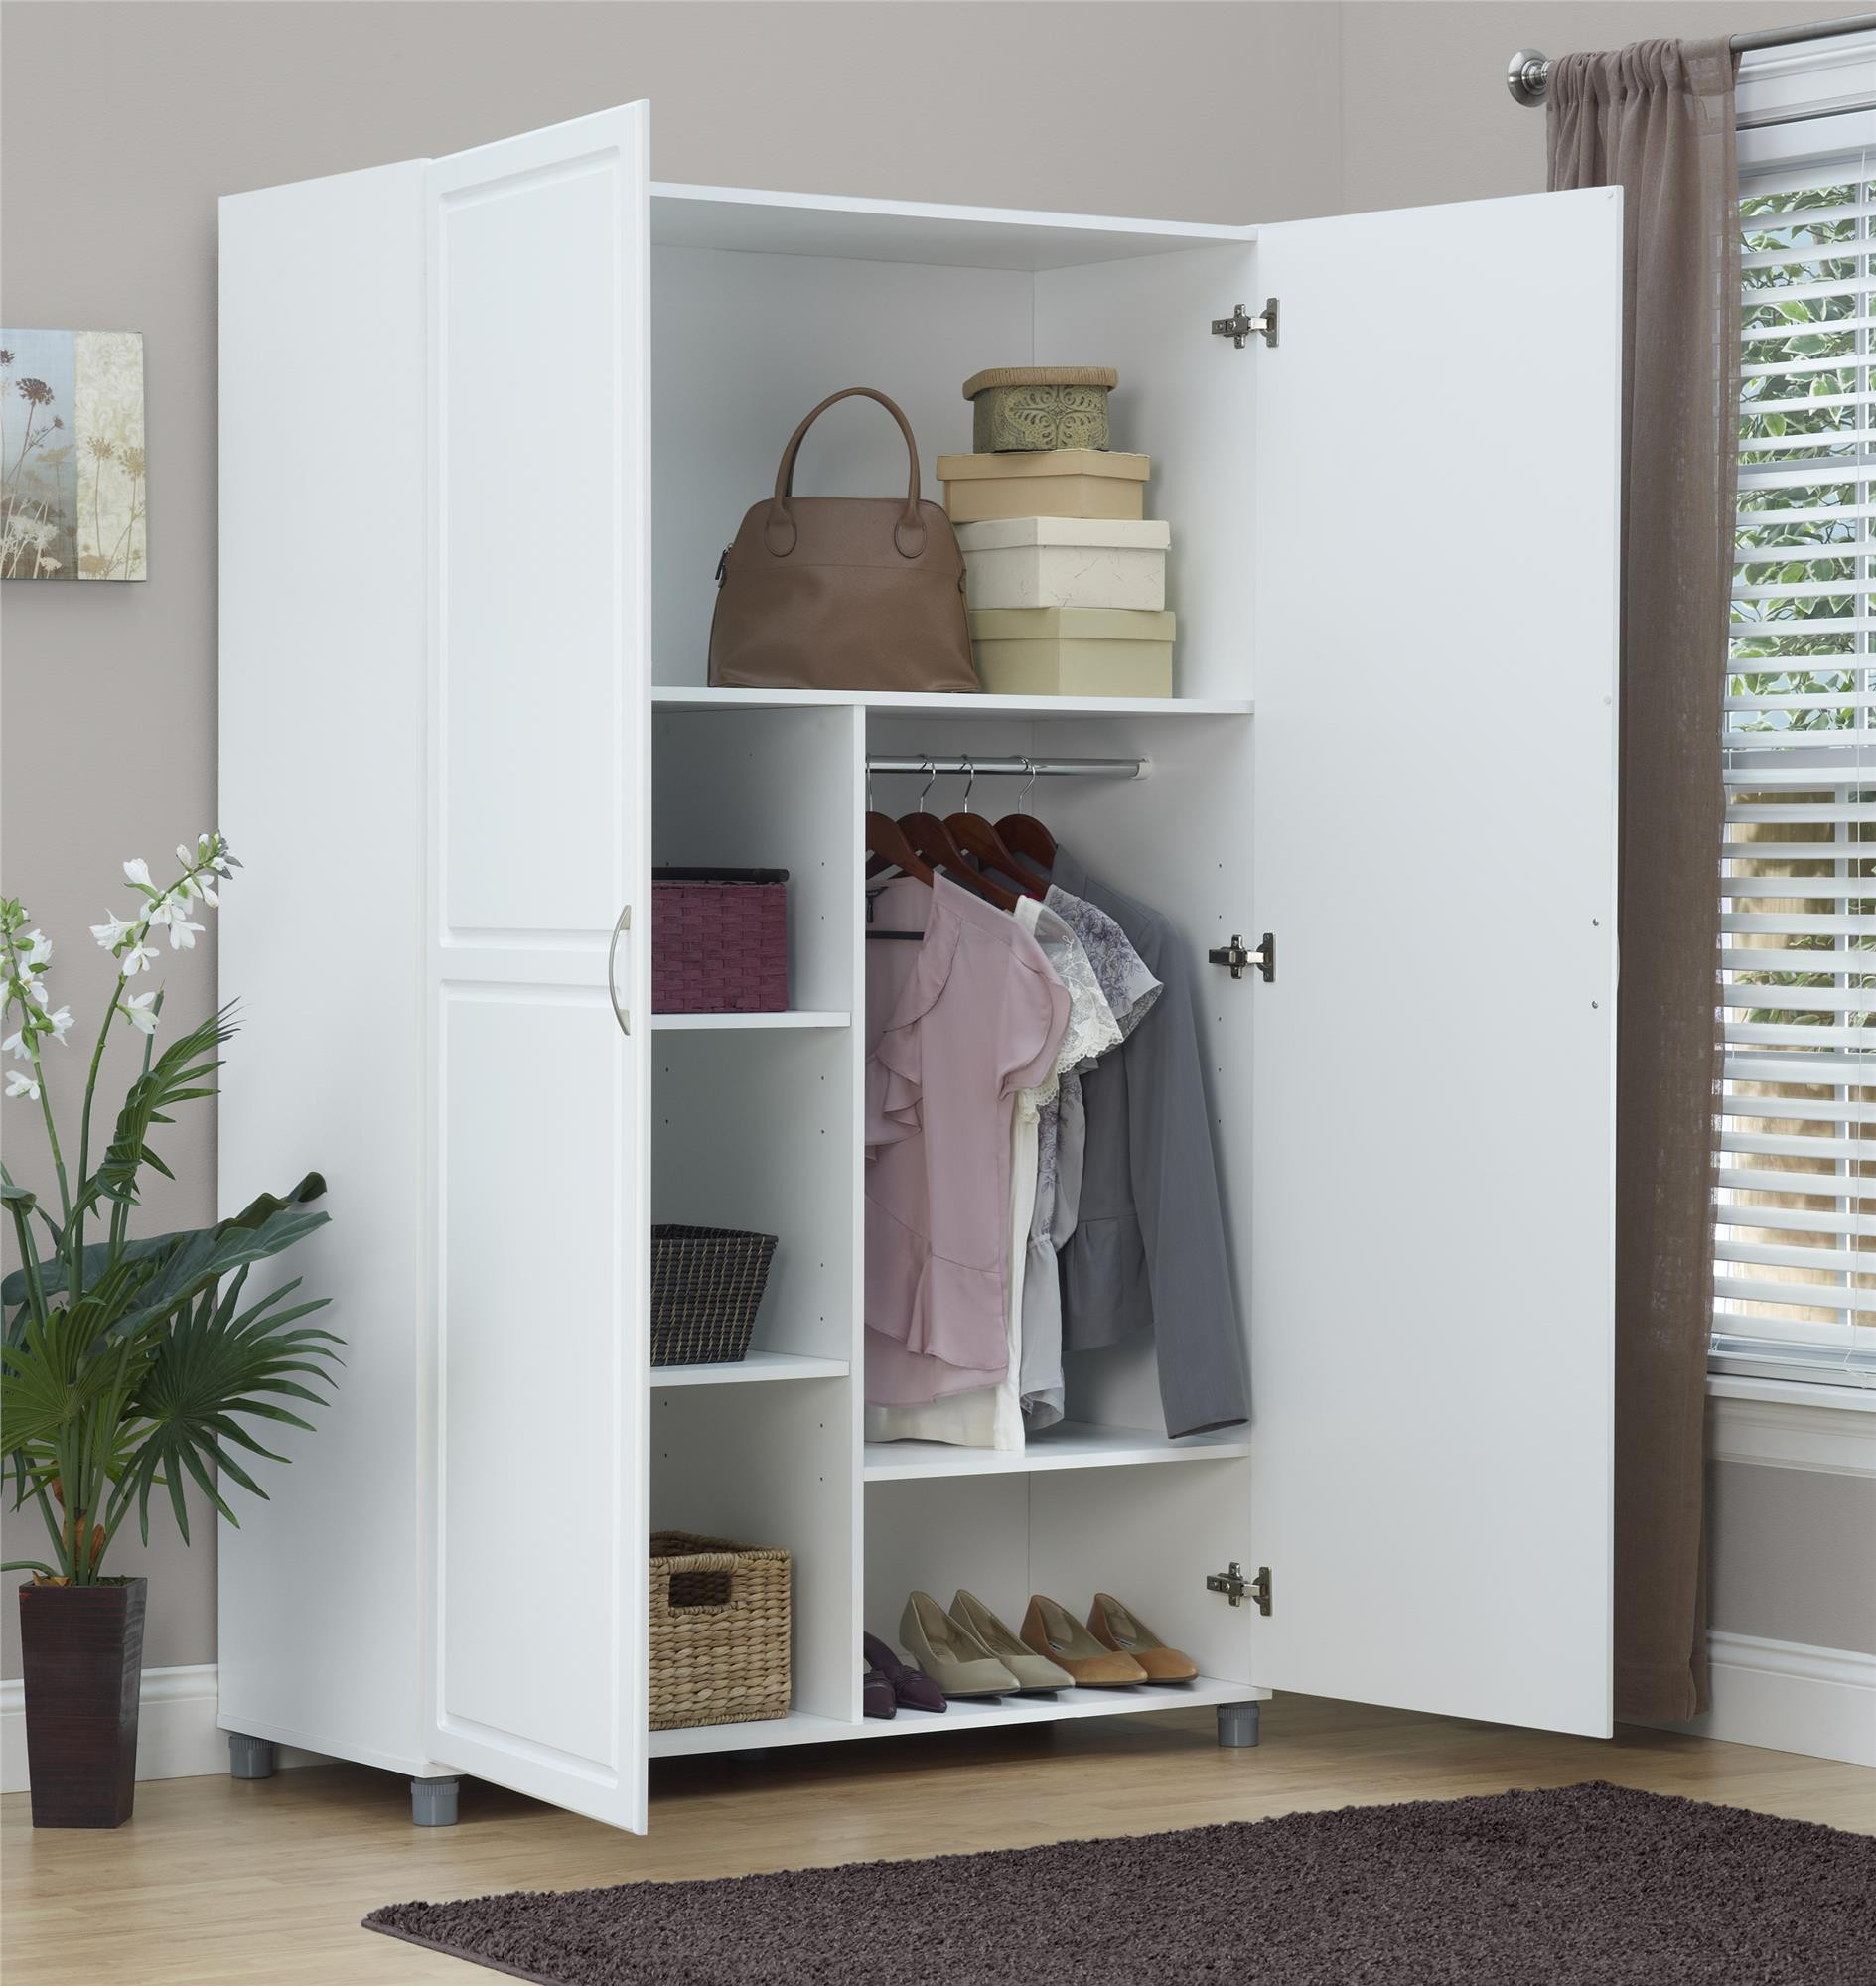 Storage Cabinet For Bedrooms
 Ameriwood Furniture